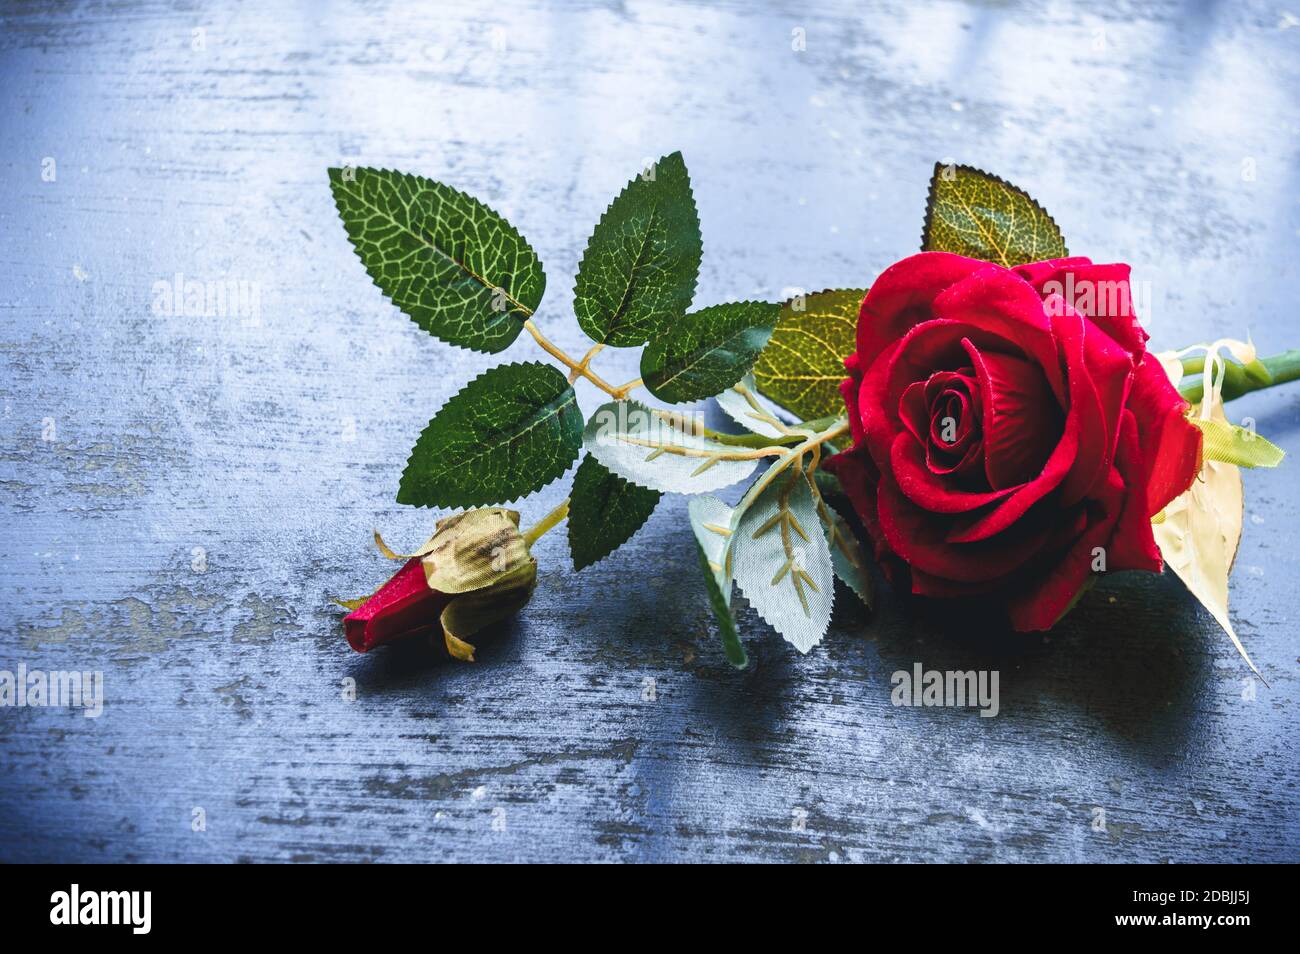 Hình ảnh hoa hồng đỏ trên sàn đá hoa cương thô chắc chắn sẽ khiến bạn nhớ đến những kỉ niệm lãng mạn và đầy tình yêu. Hãy chiêm ngưỡng bức hình này để cảm nhận những cảm xúc ấy một cách chân thật.